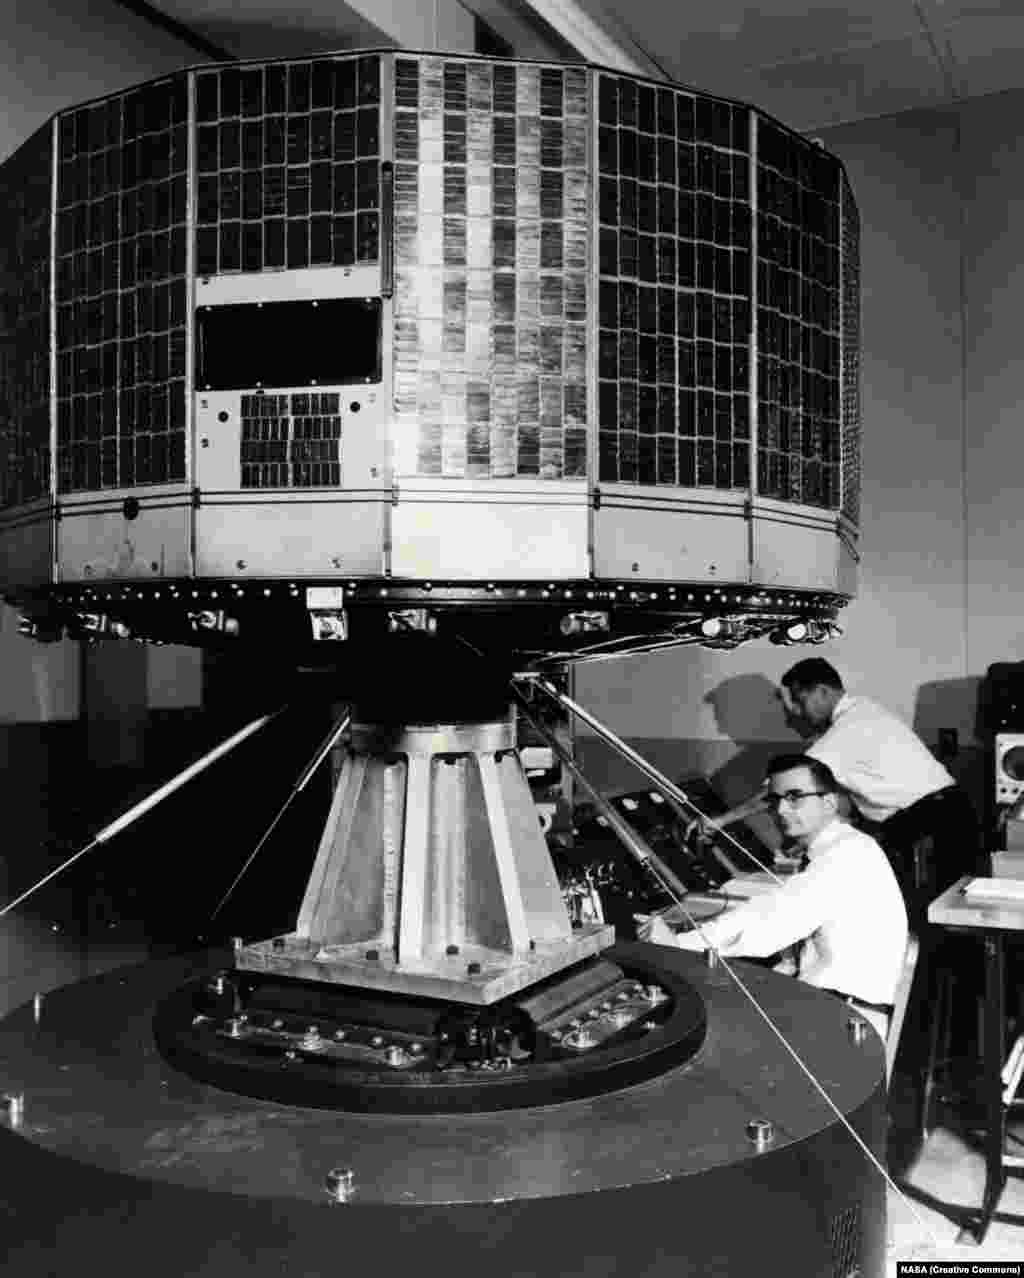 &laquo;Tiros 1&raquo;, мэтэаралягічны спадарожнік агенцтва НАСА, падчас выпрабаваньняў на трываласьць перад сваім запускам у 1960 годзе. Гэта быў першы мэтэаралягічны спадарожнік, які мог перадаваць карціну надвор&rsquo;я ад дзьвюх камэраў да цэнтру кіраваньня на Зямлі. 